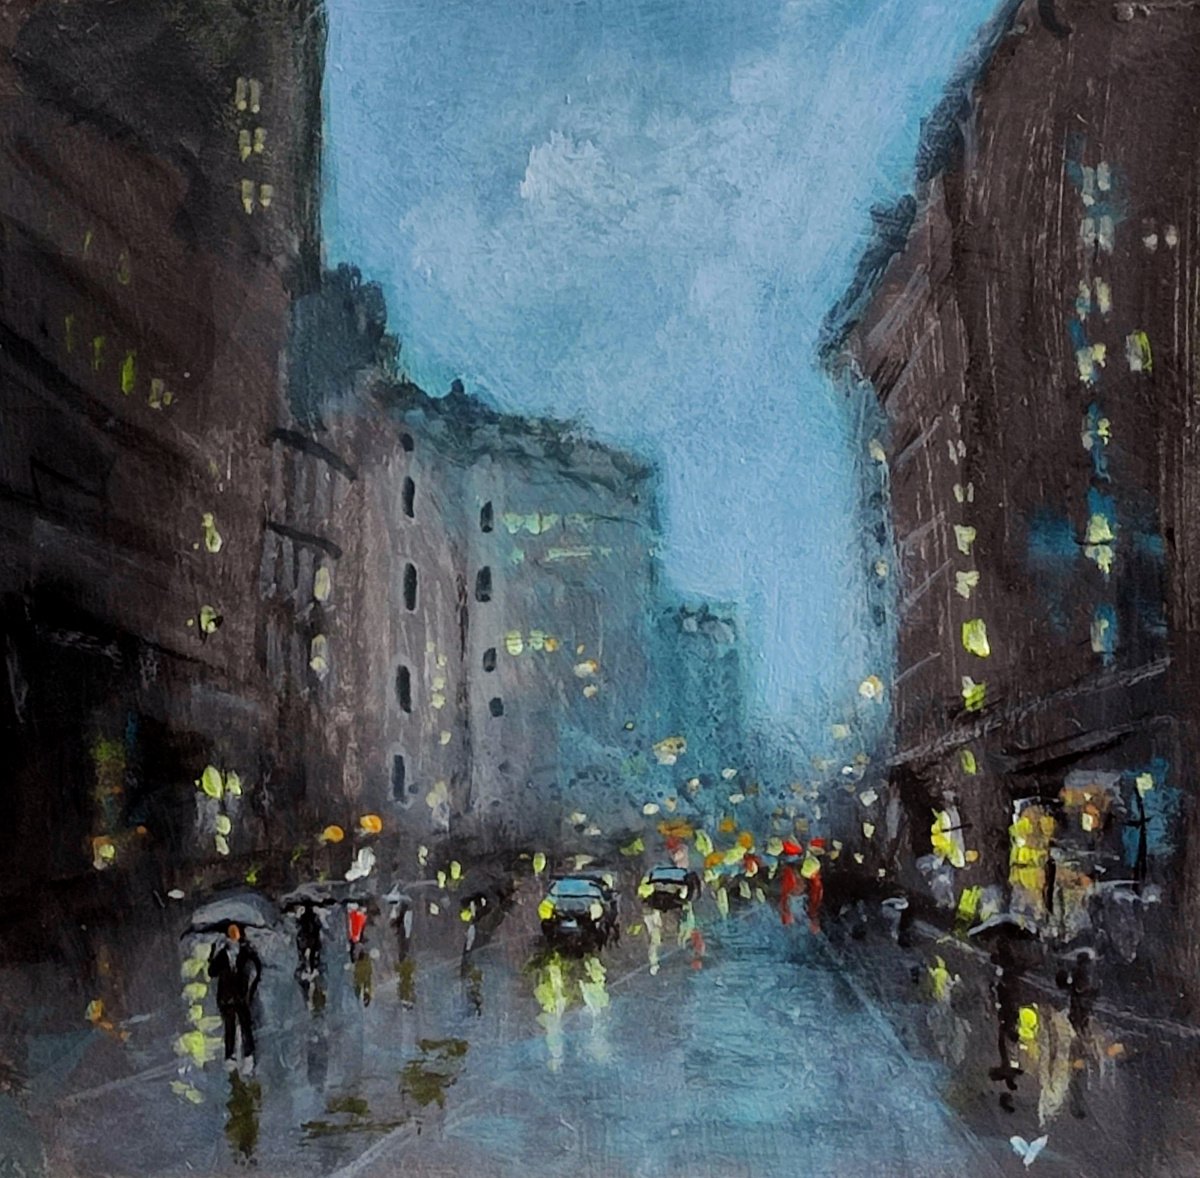 London City in rain5 by Vishalandra Dakur